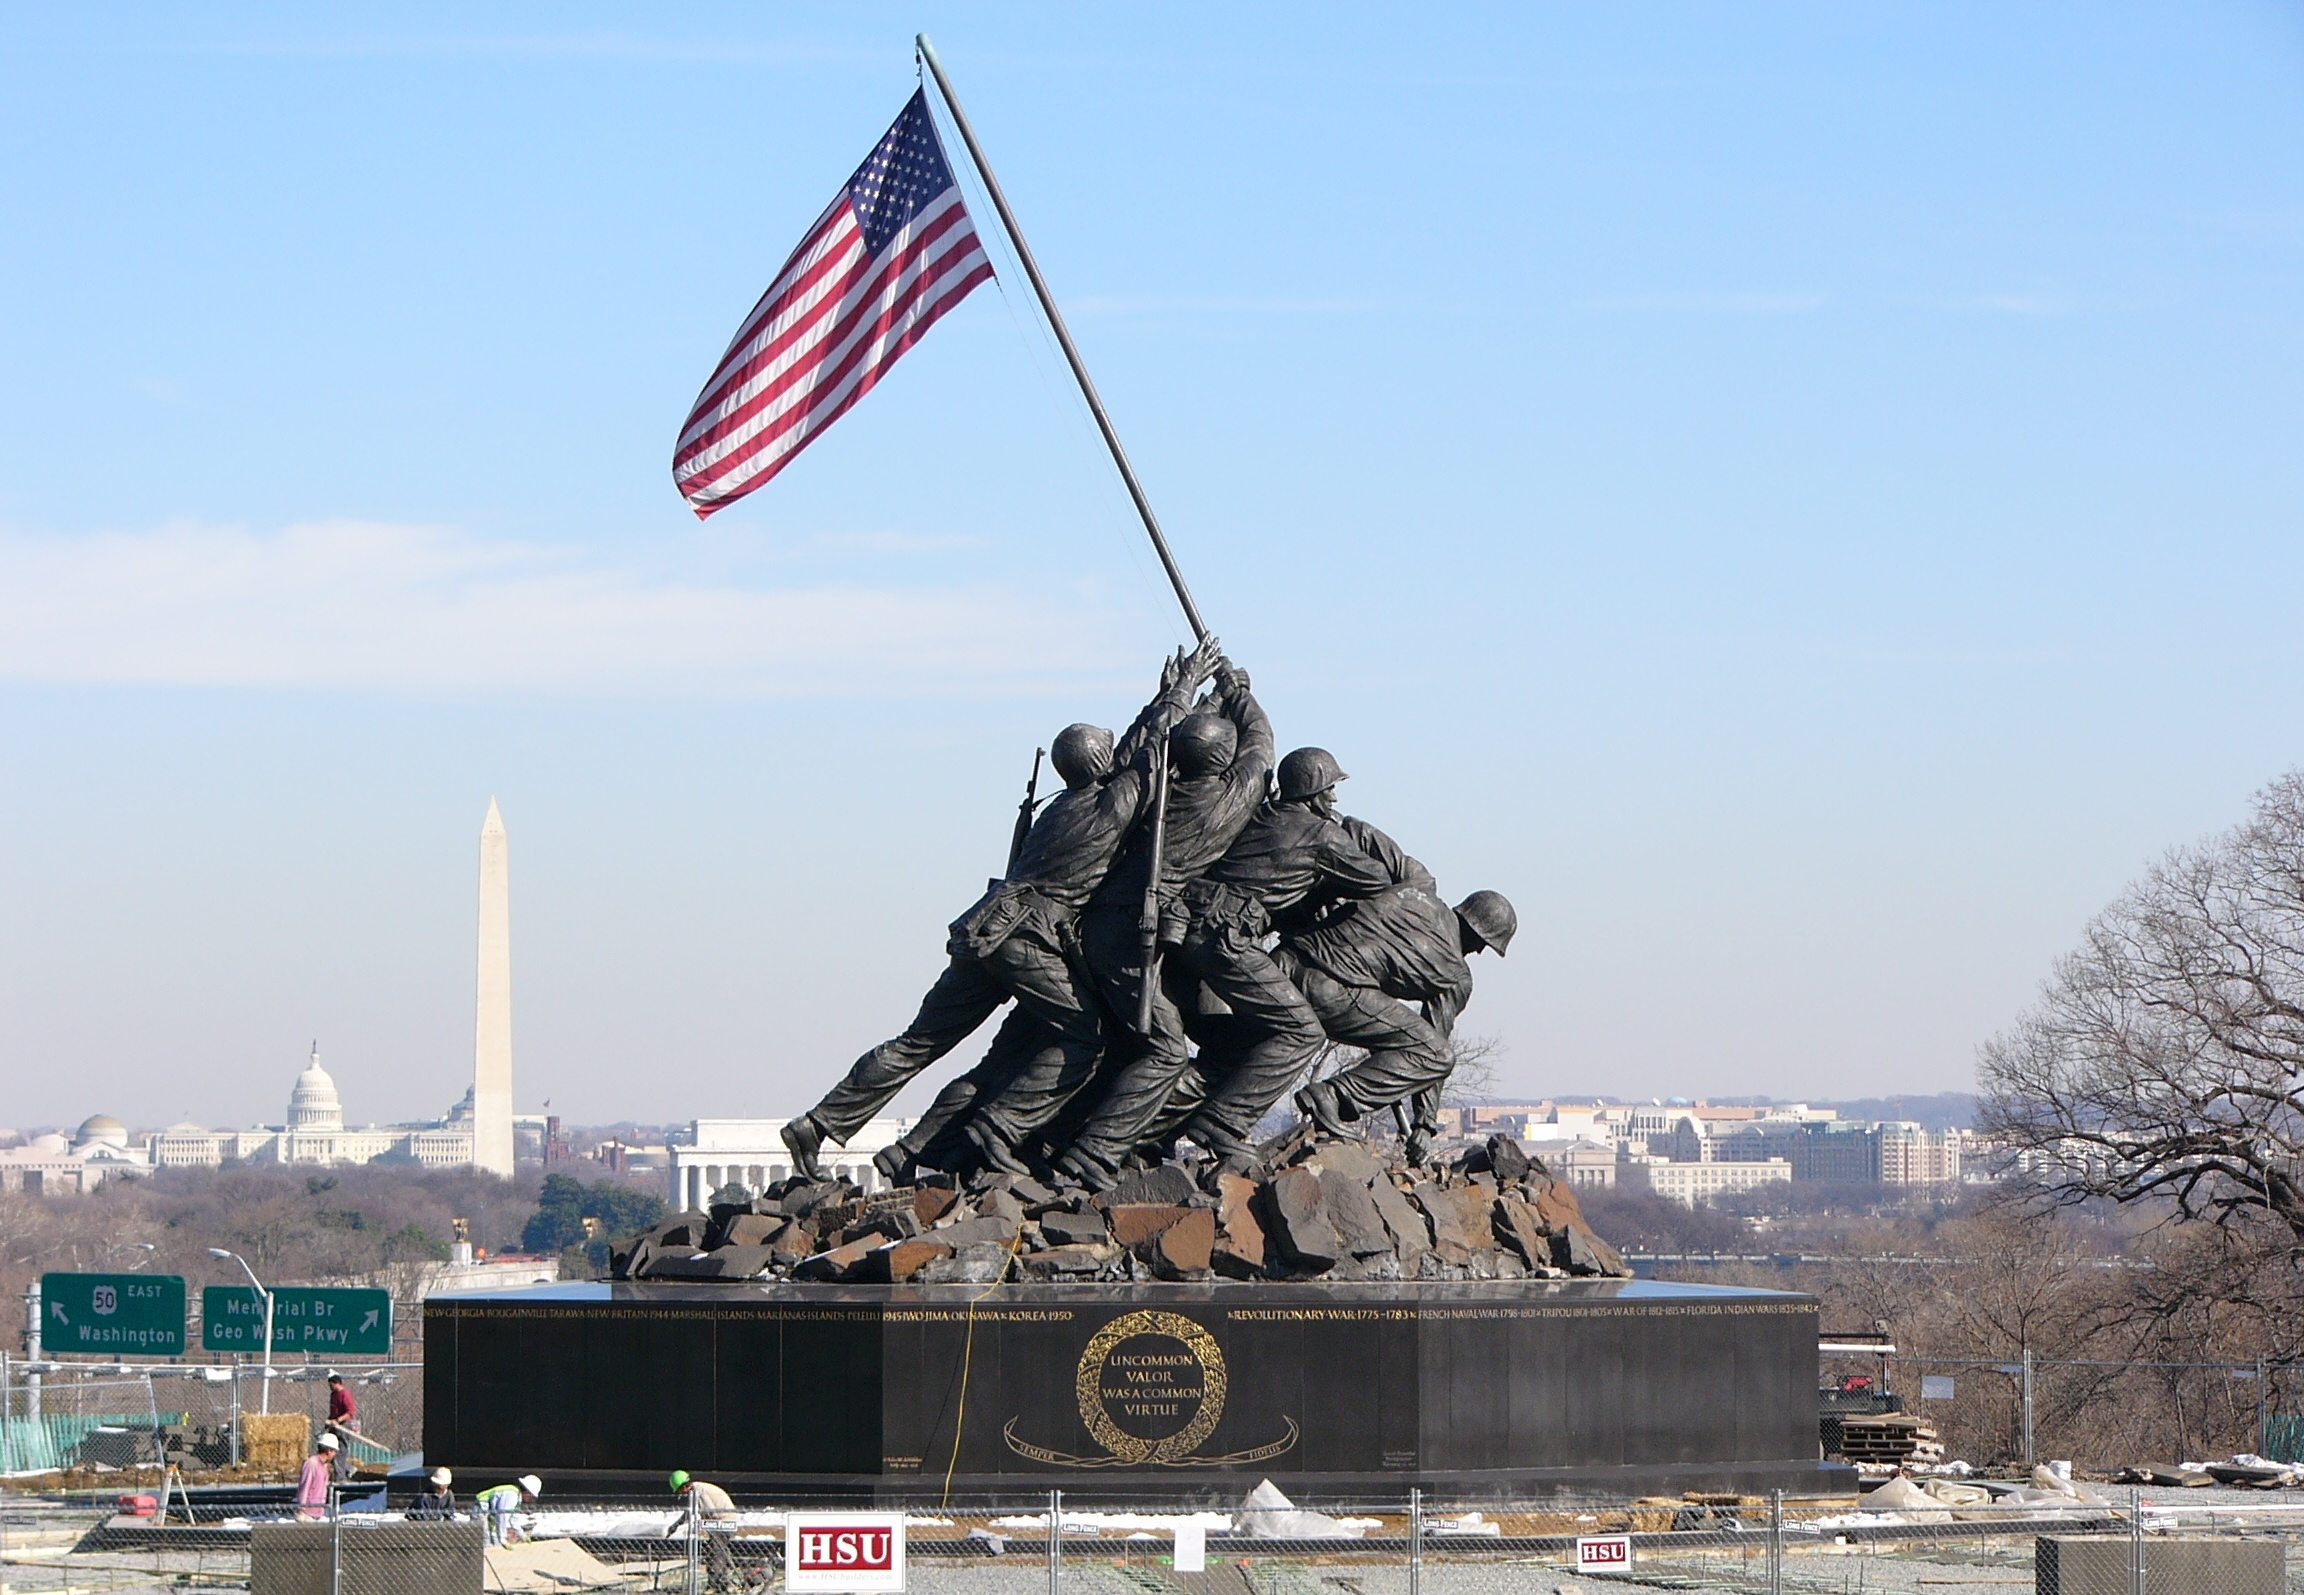 National Marine Corps Memorial - Iwo Jima